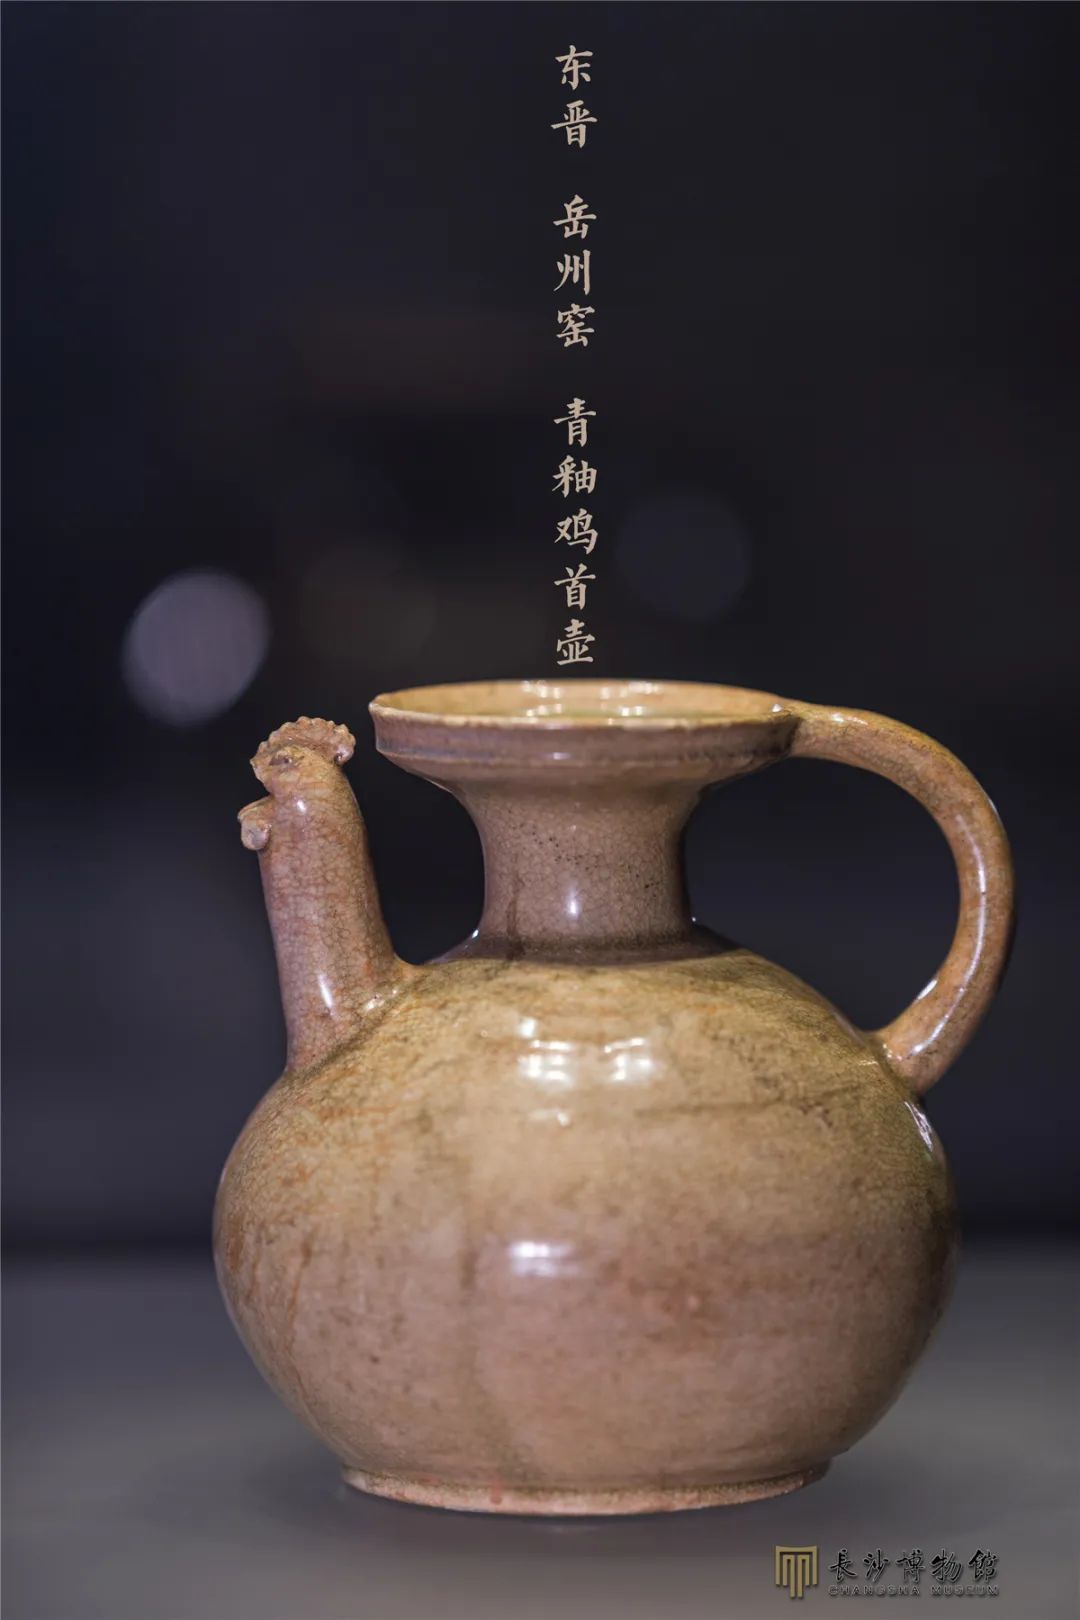 青釉鸡首壶 东晋（317-420年） 长沙市南湖路出土 长沙市博物馆藏